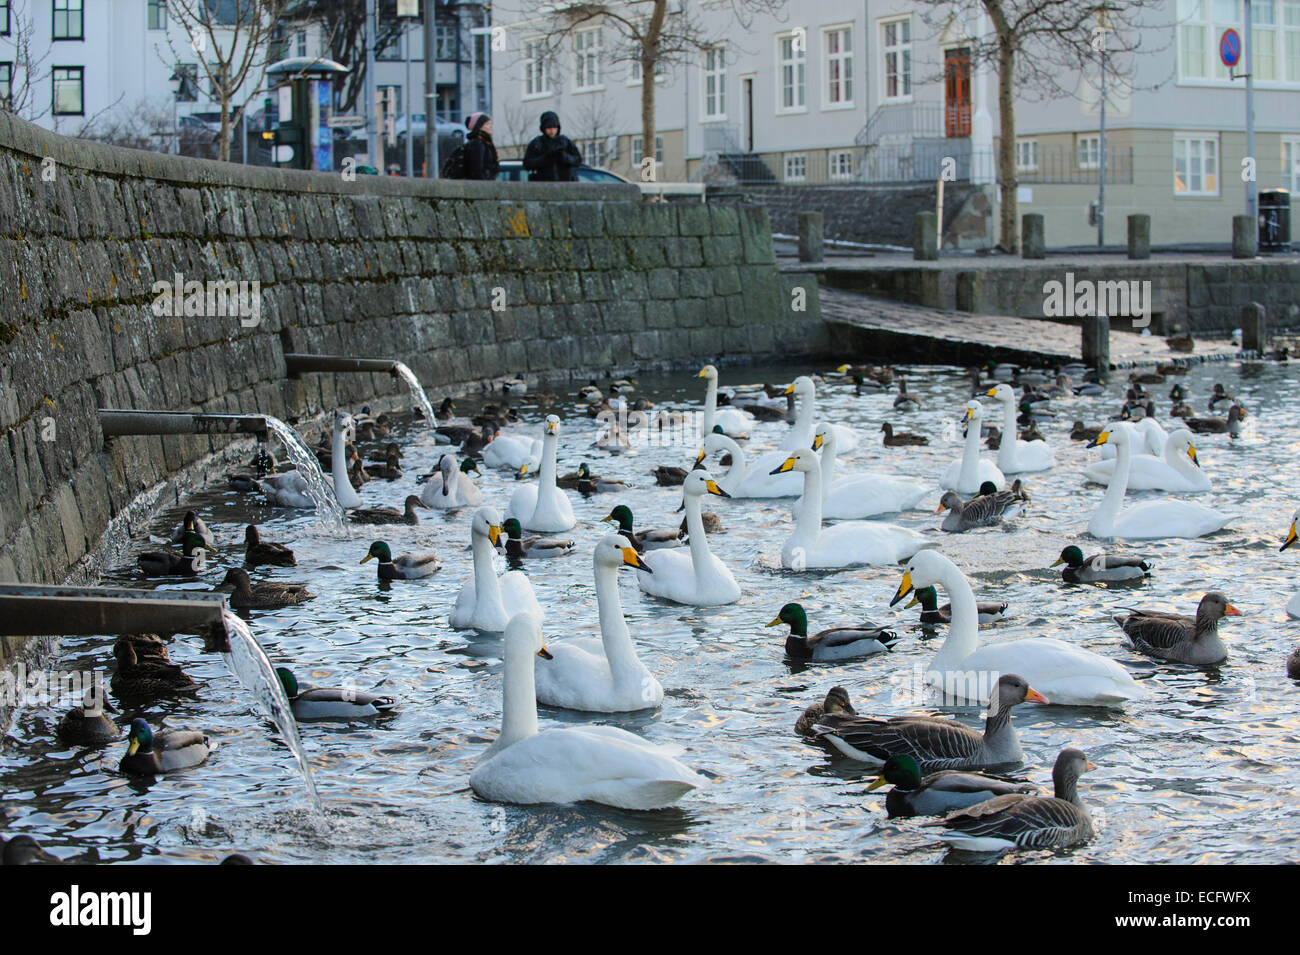 (L'Étang Tjörnin) Reykjavik, Islande. Novembre 2012. Cygne chanteur (Cygnus cygnus) et d'autres oiseaux aquatiques. Banque D'Images